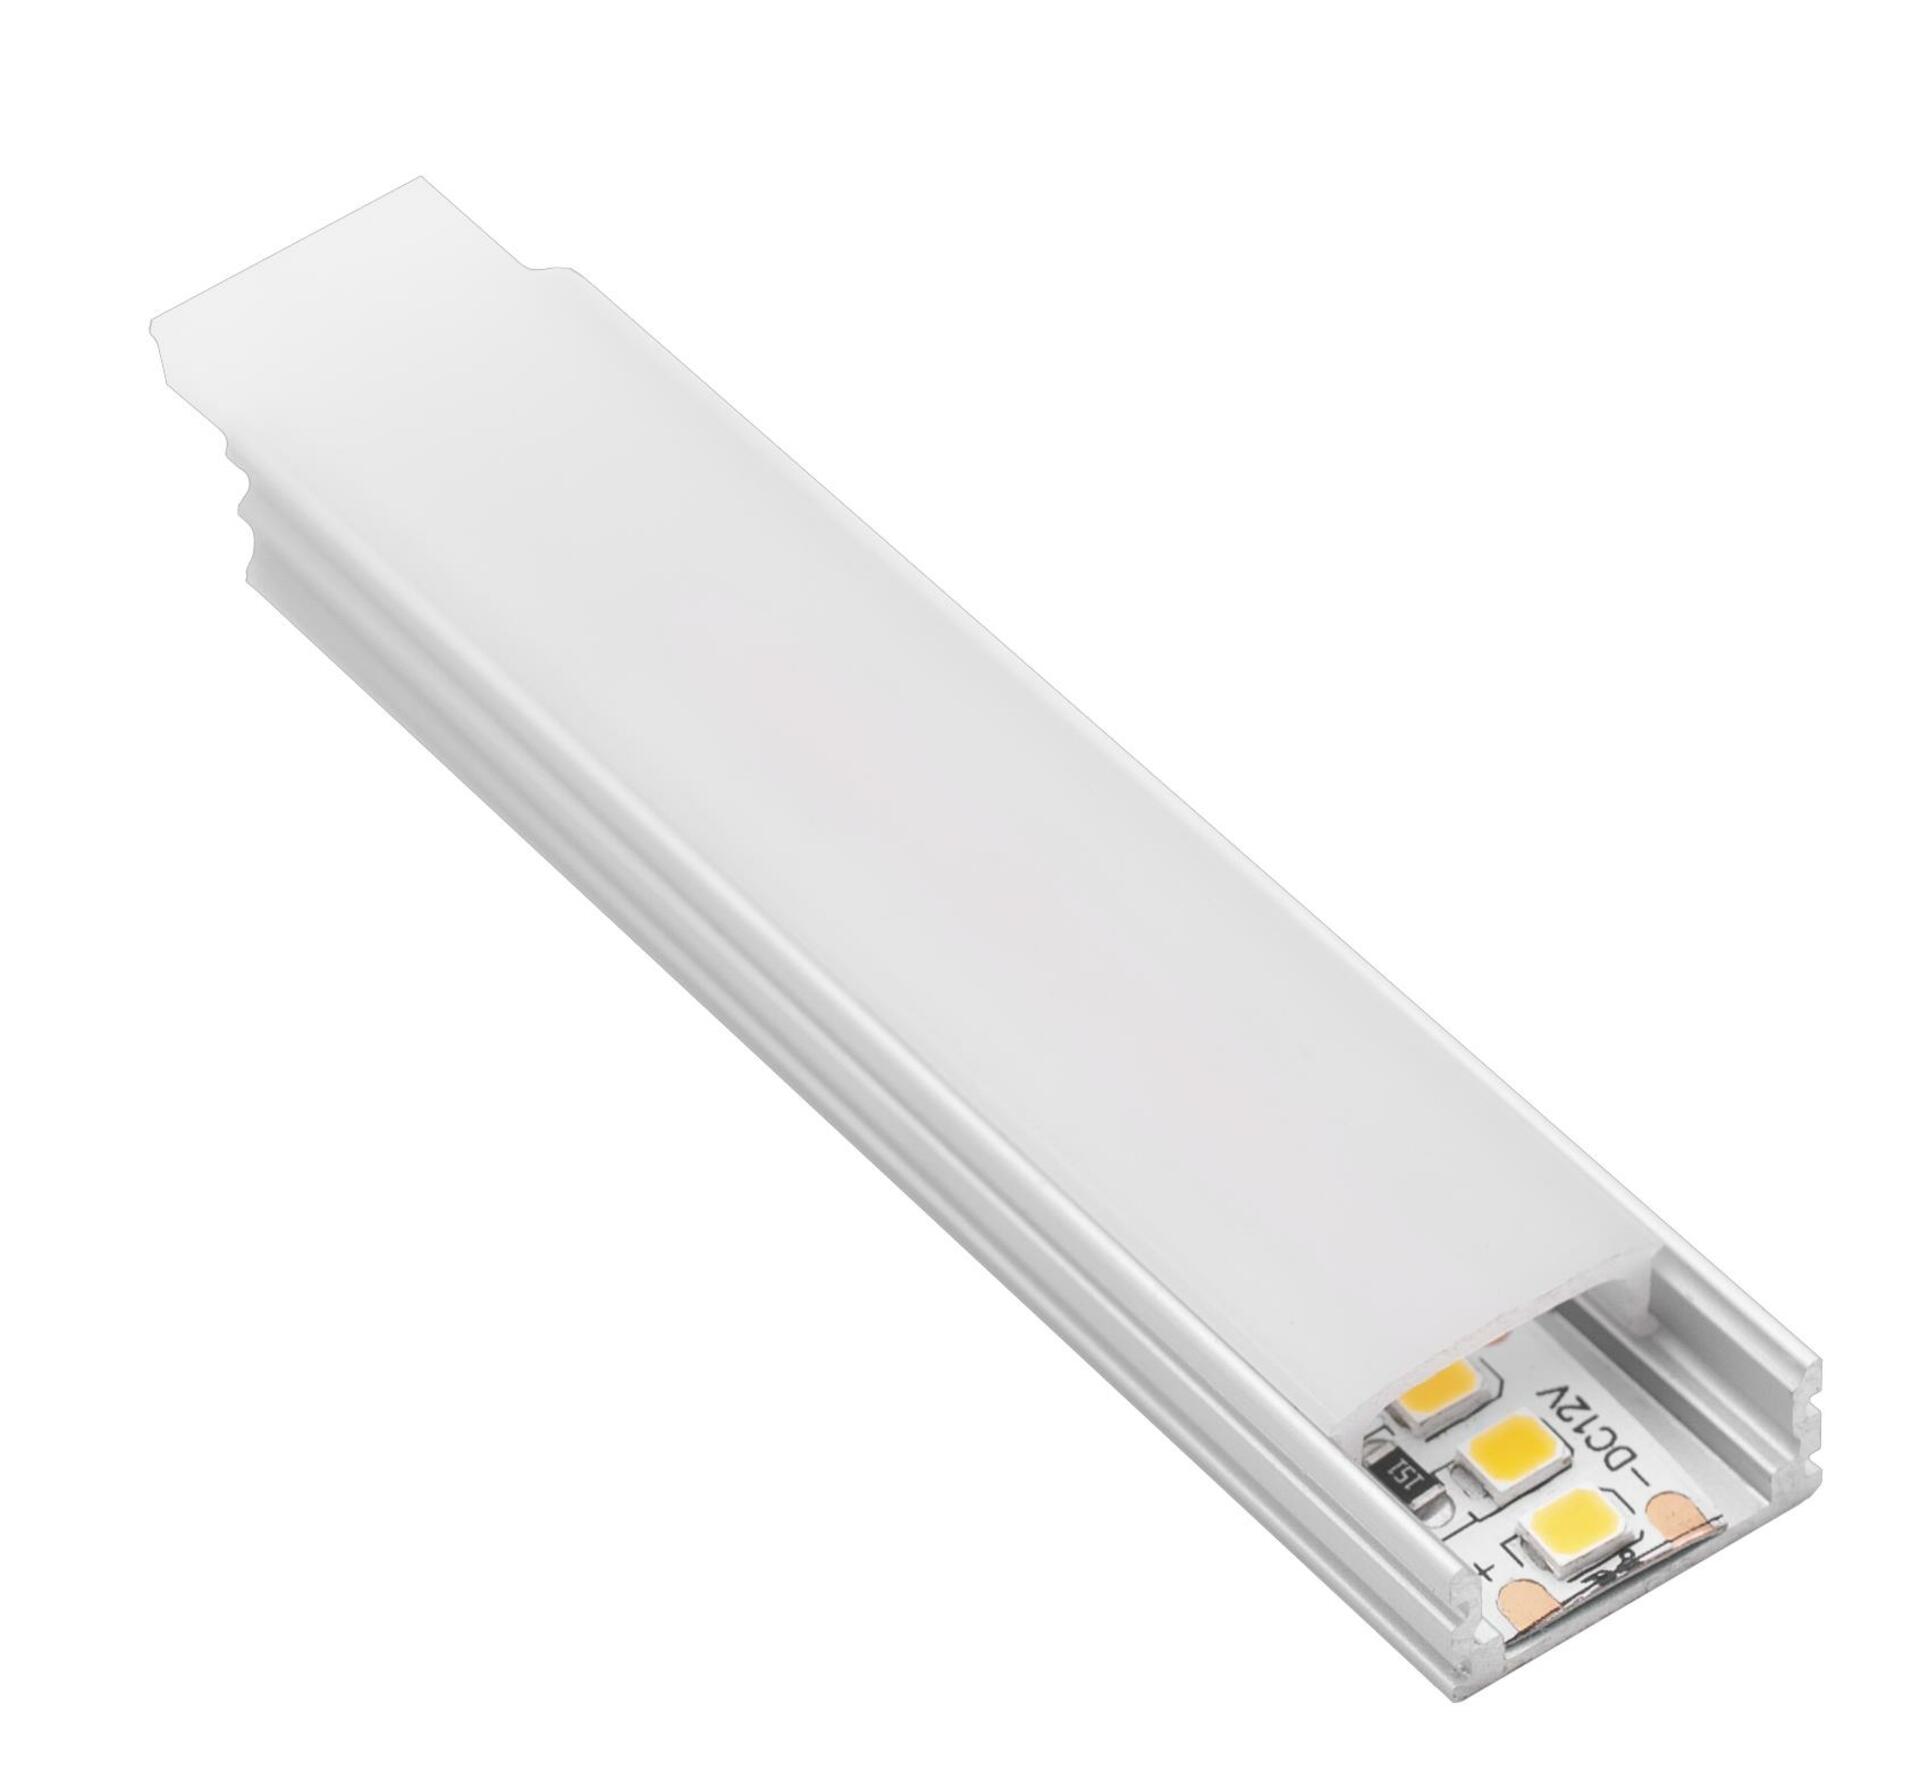 CENTURY AL PROFIL pro LED pásek 10mm plochý opálový kryt 17x8mm IP20 délka 2m CEN KPRS-1708